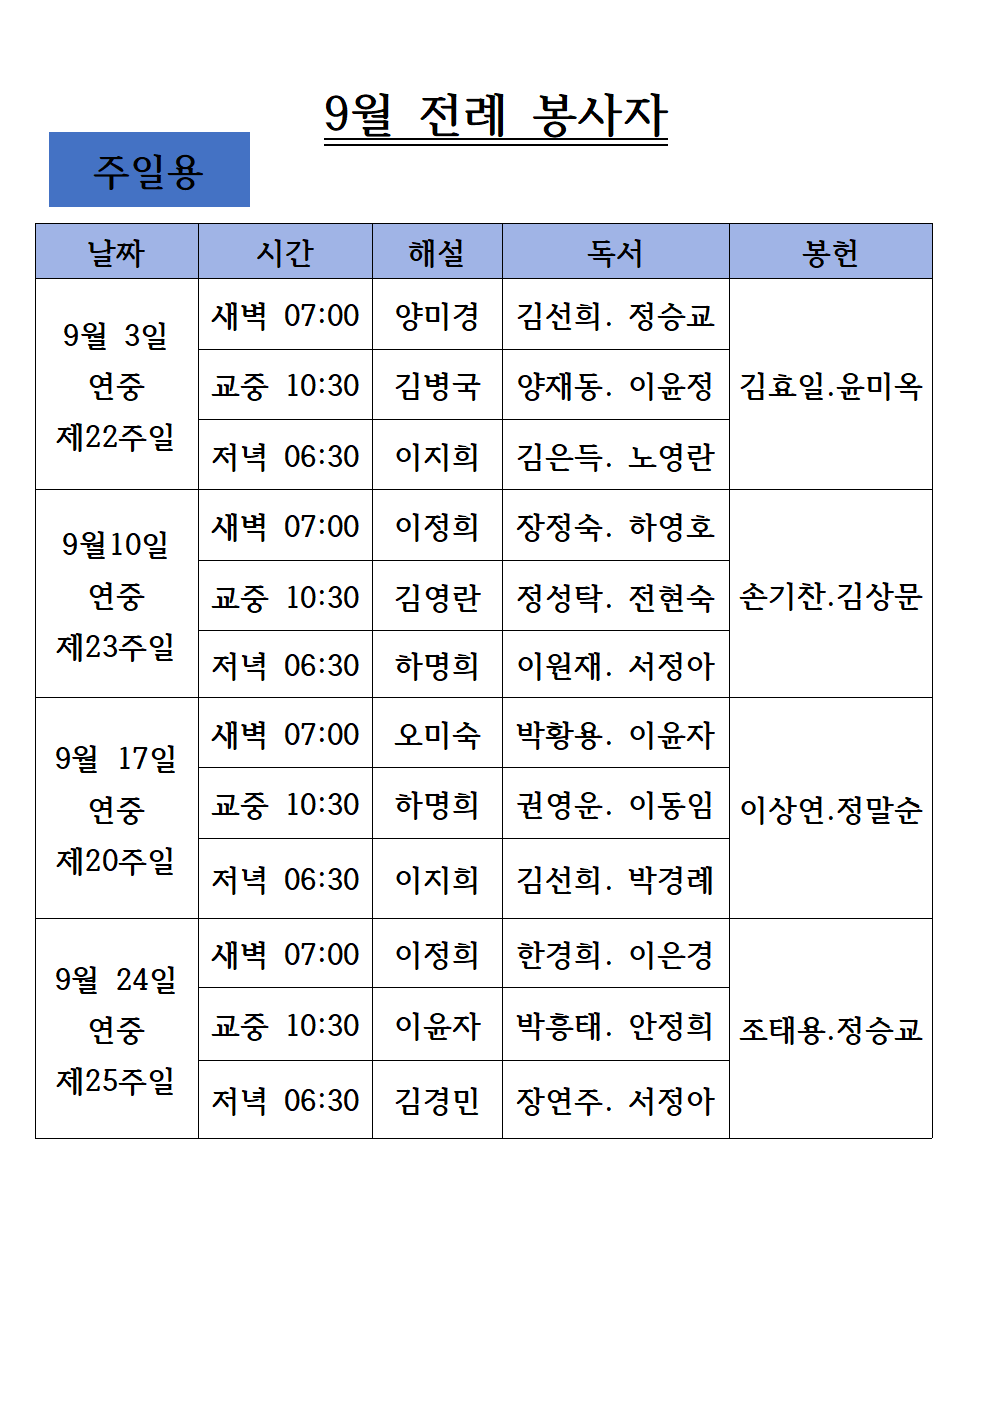 23년 9월 전례봉사자-주일용 (2)001.png